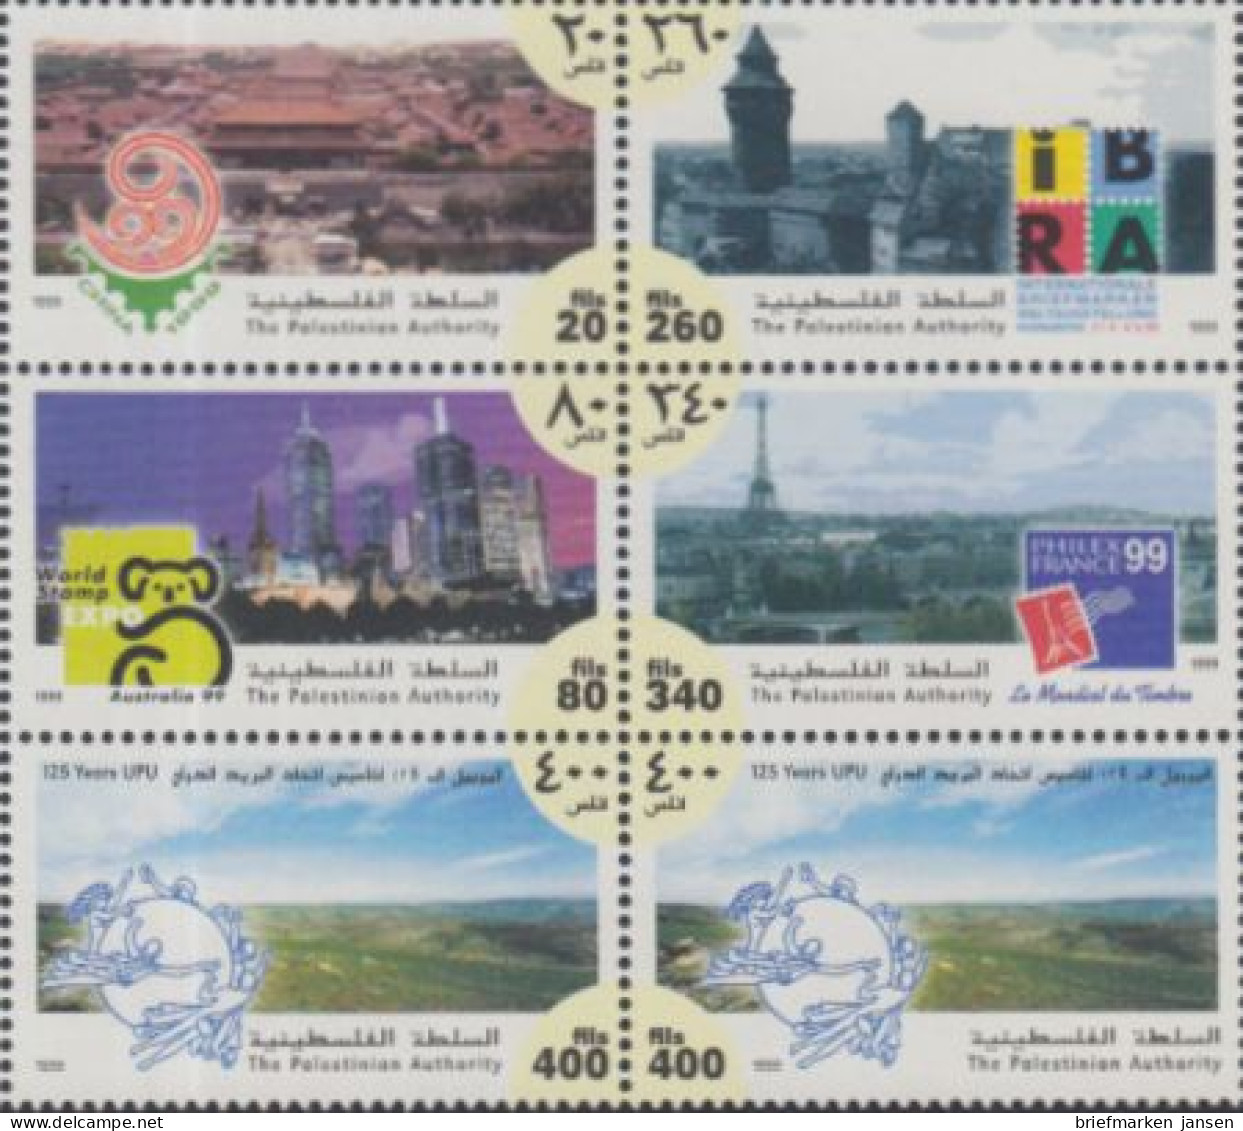 Palästina Mi.Nr. Zdr.105-10 Briefmarkenausstellungen + 125J.UPU (Sechserblock) - Palestine